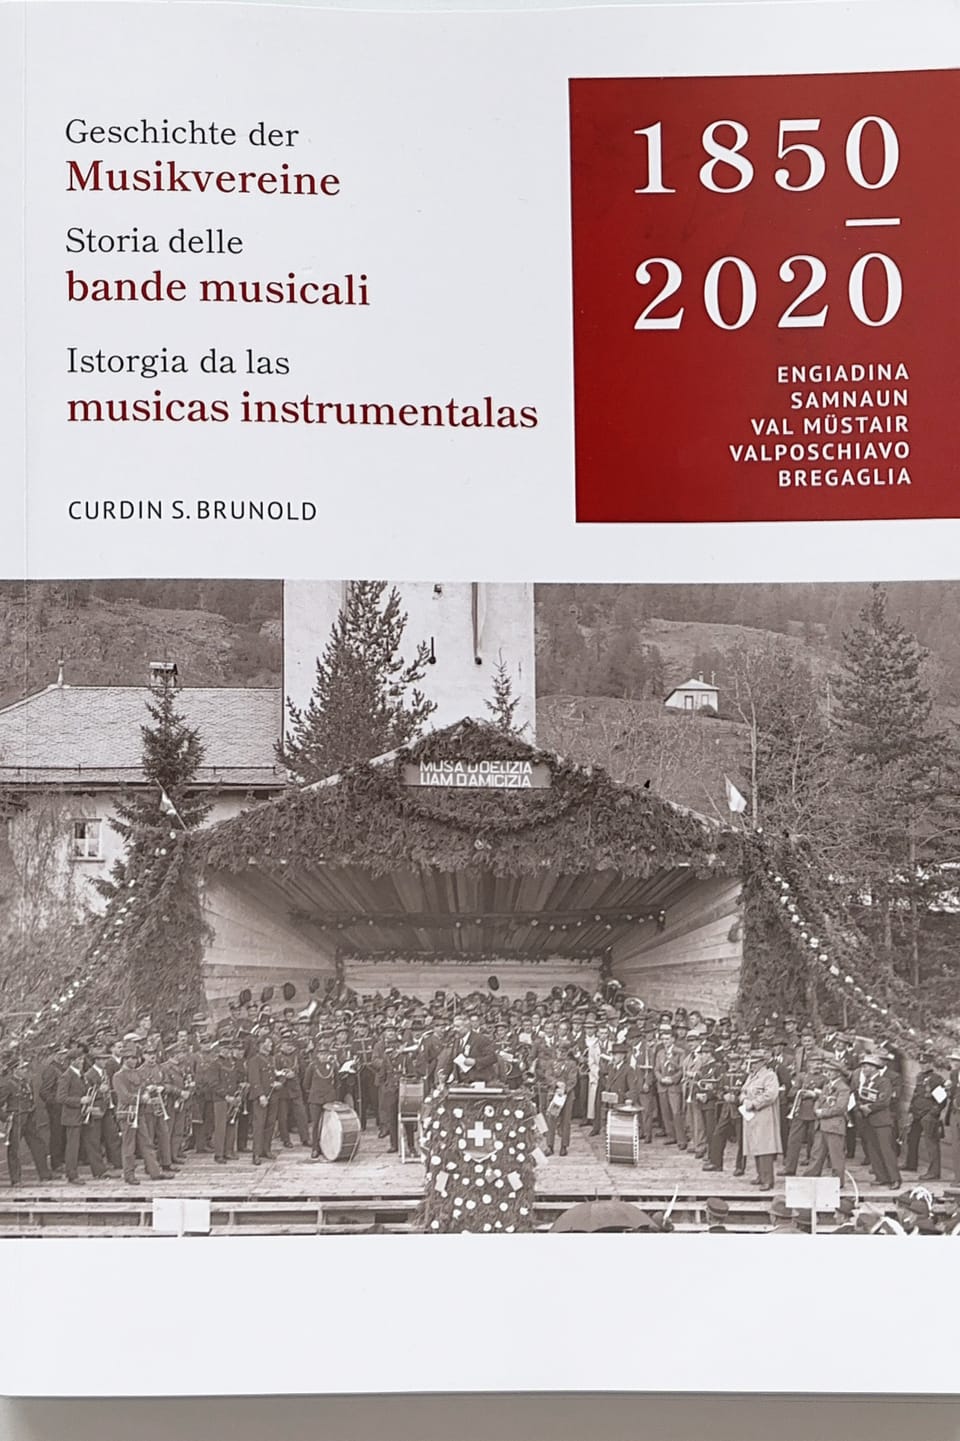 Das Buch von Curdin Brunold über die Geschichte der Musikvereine.